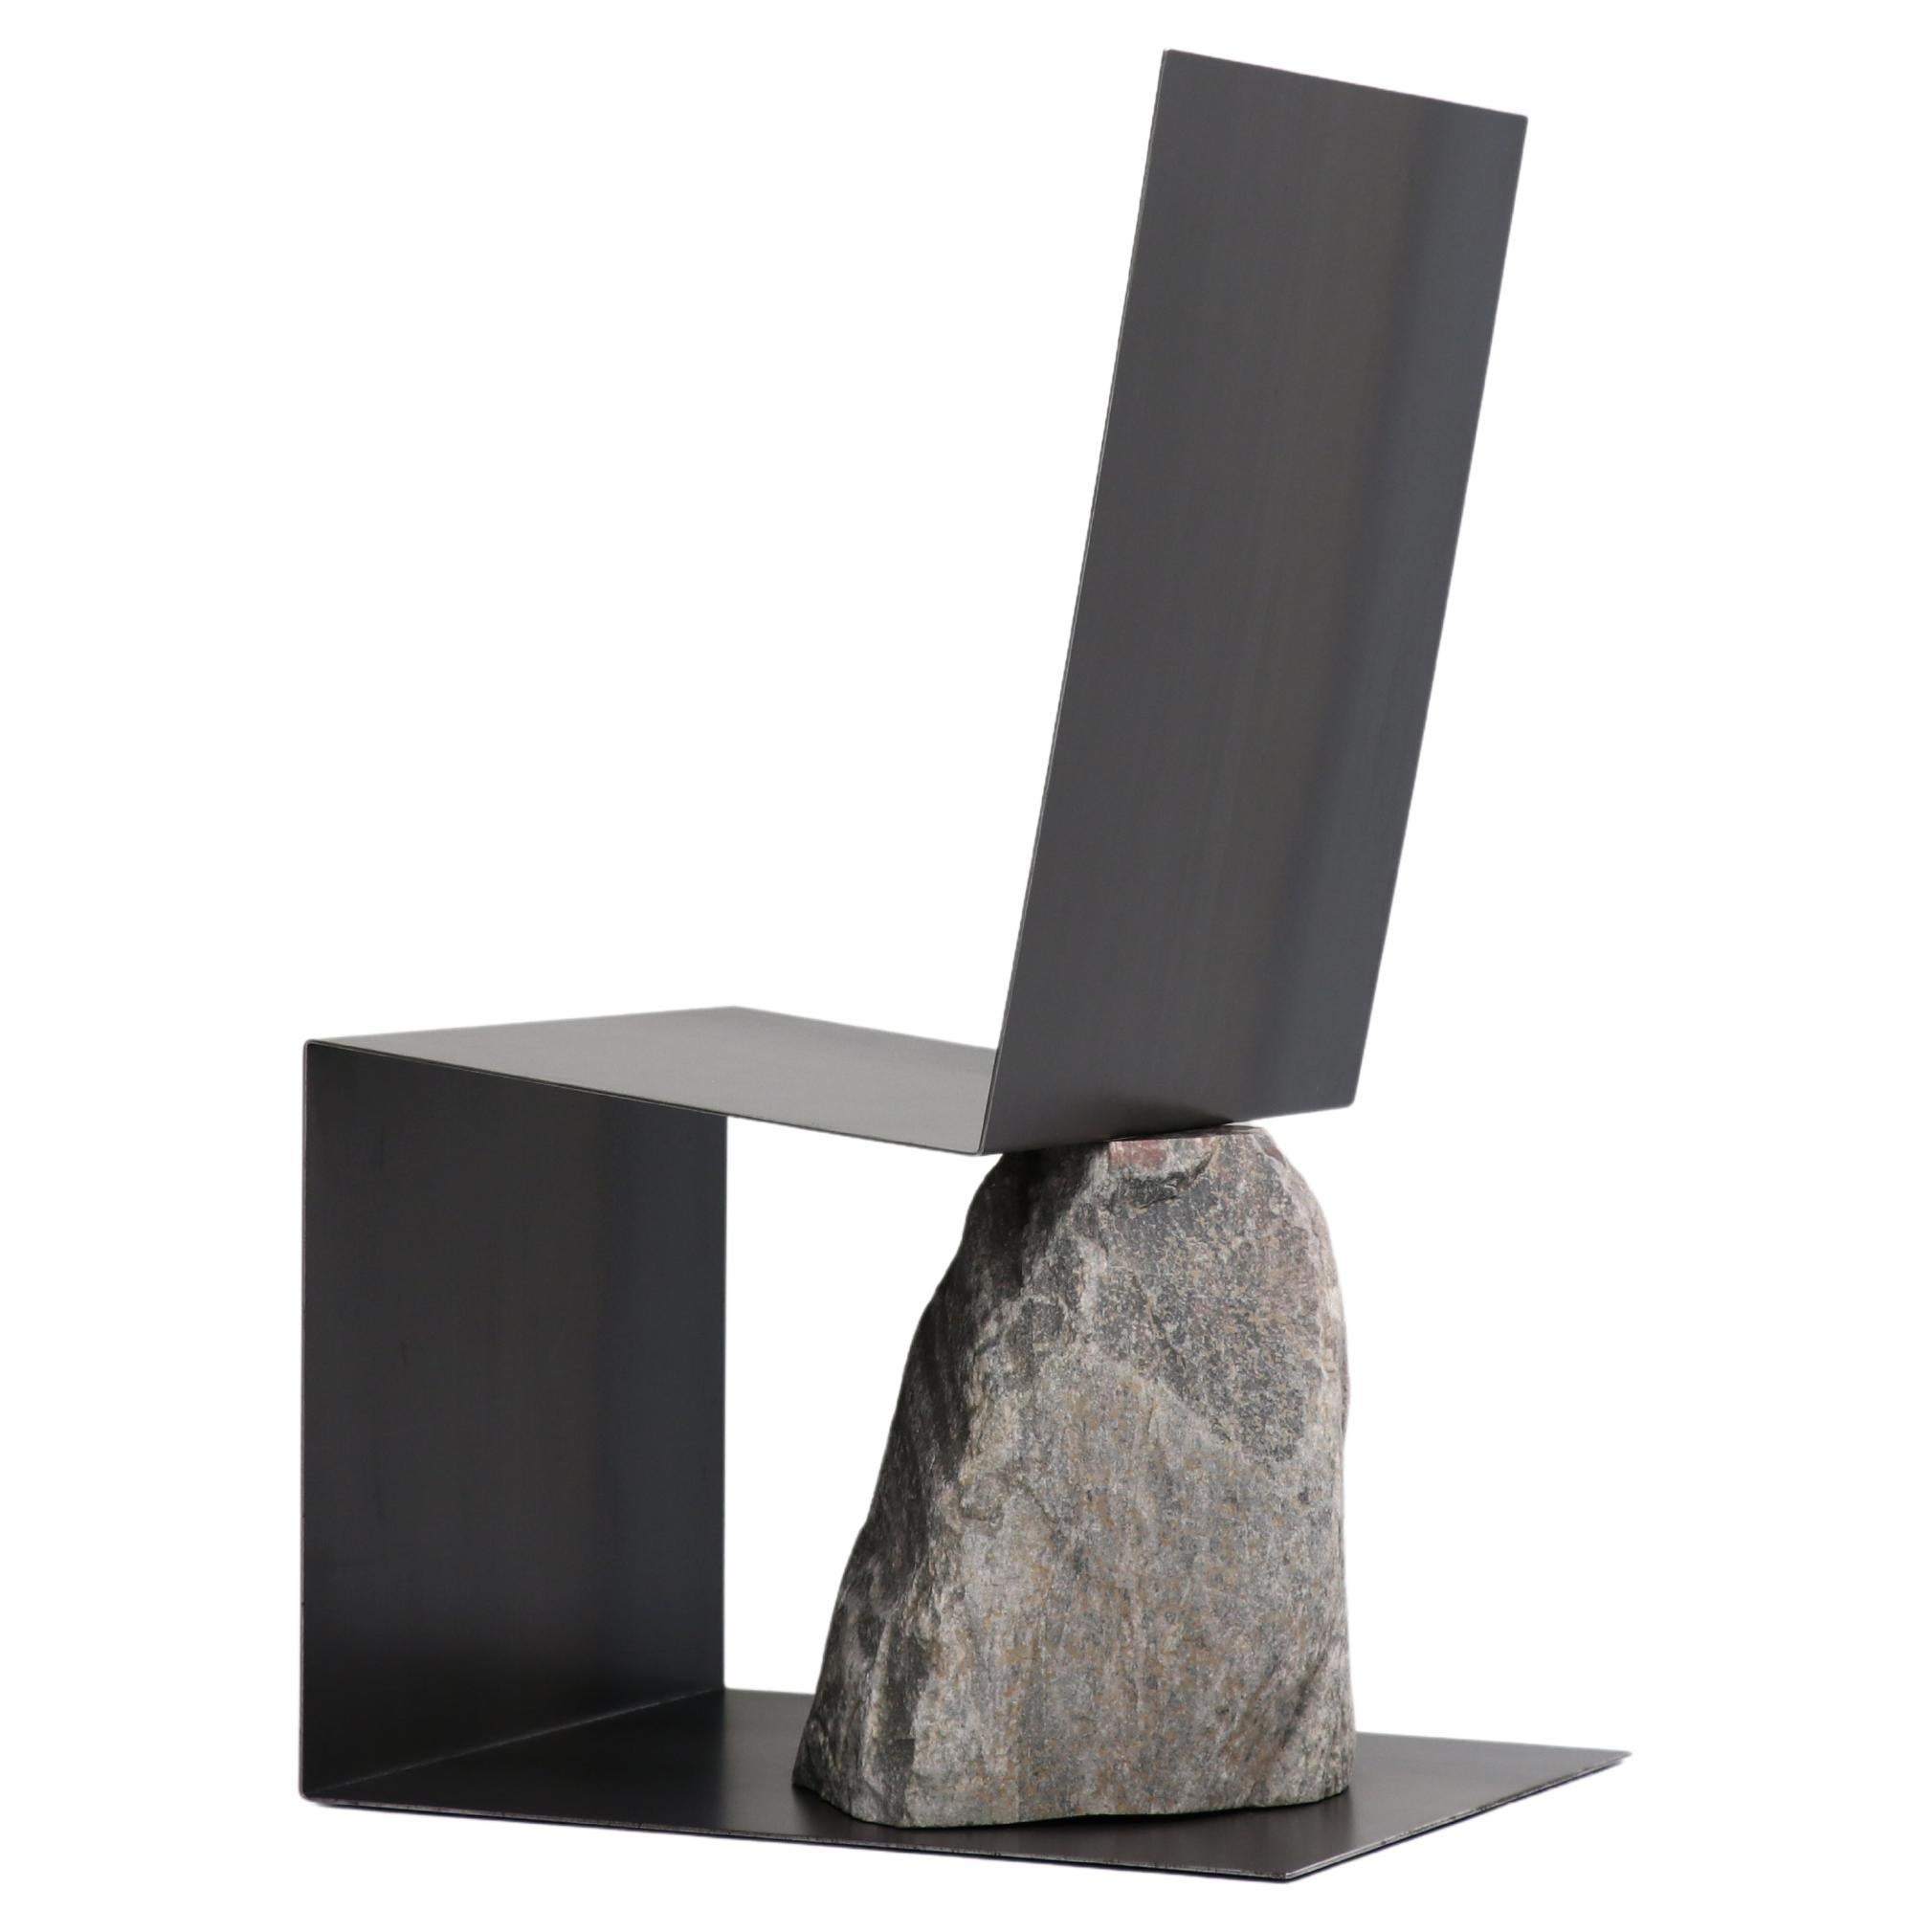 Stuhl aus Stahl und Stein von Batten and Kamp